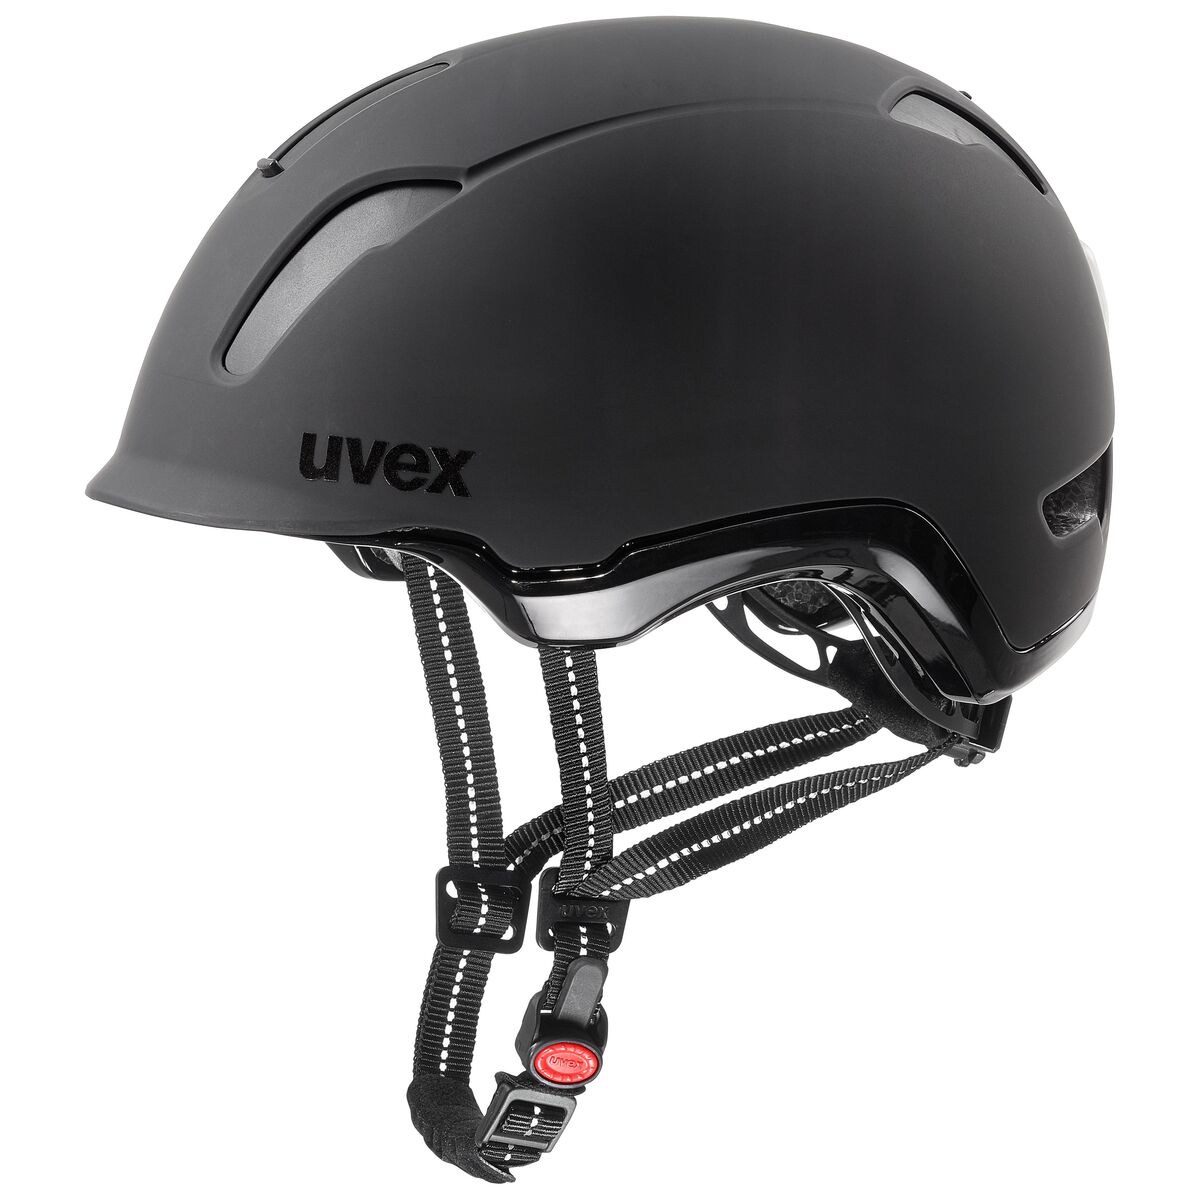 Uvex City 9 EBike Fahrrad Helm schwarz 2020 von Top